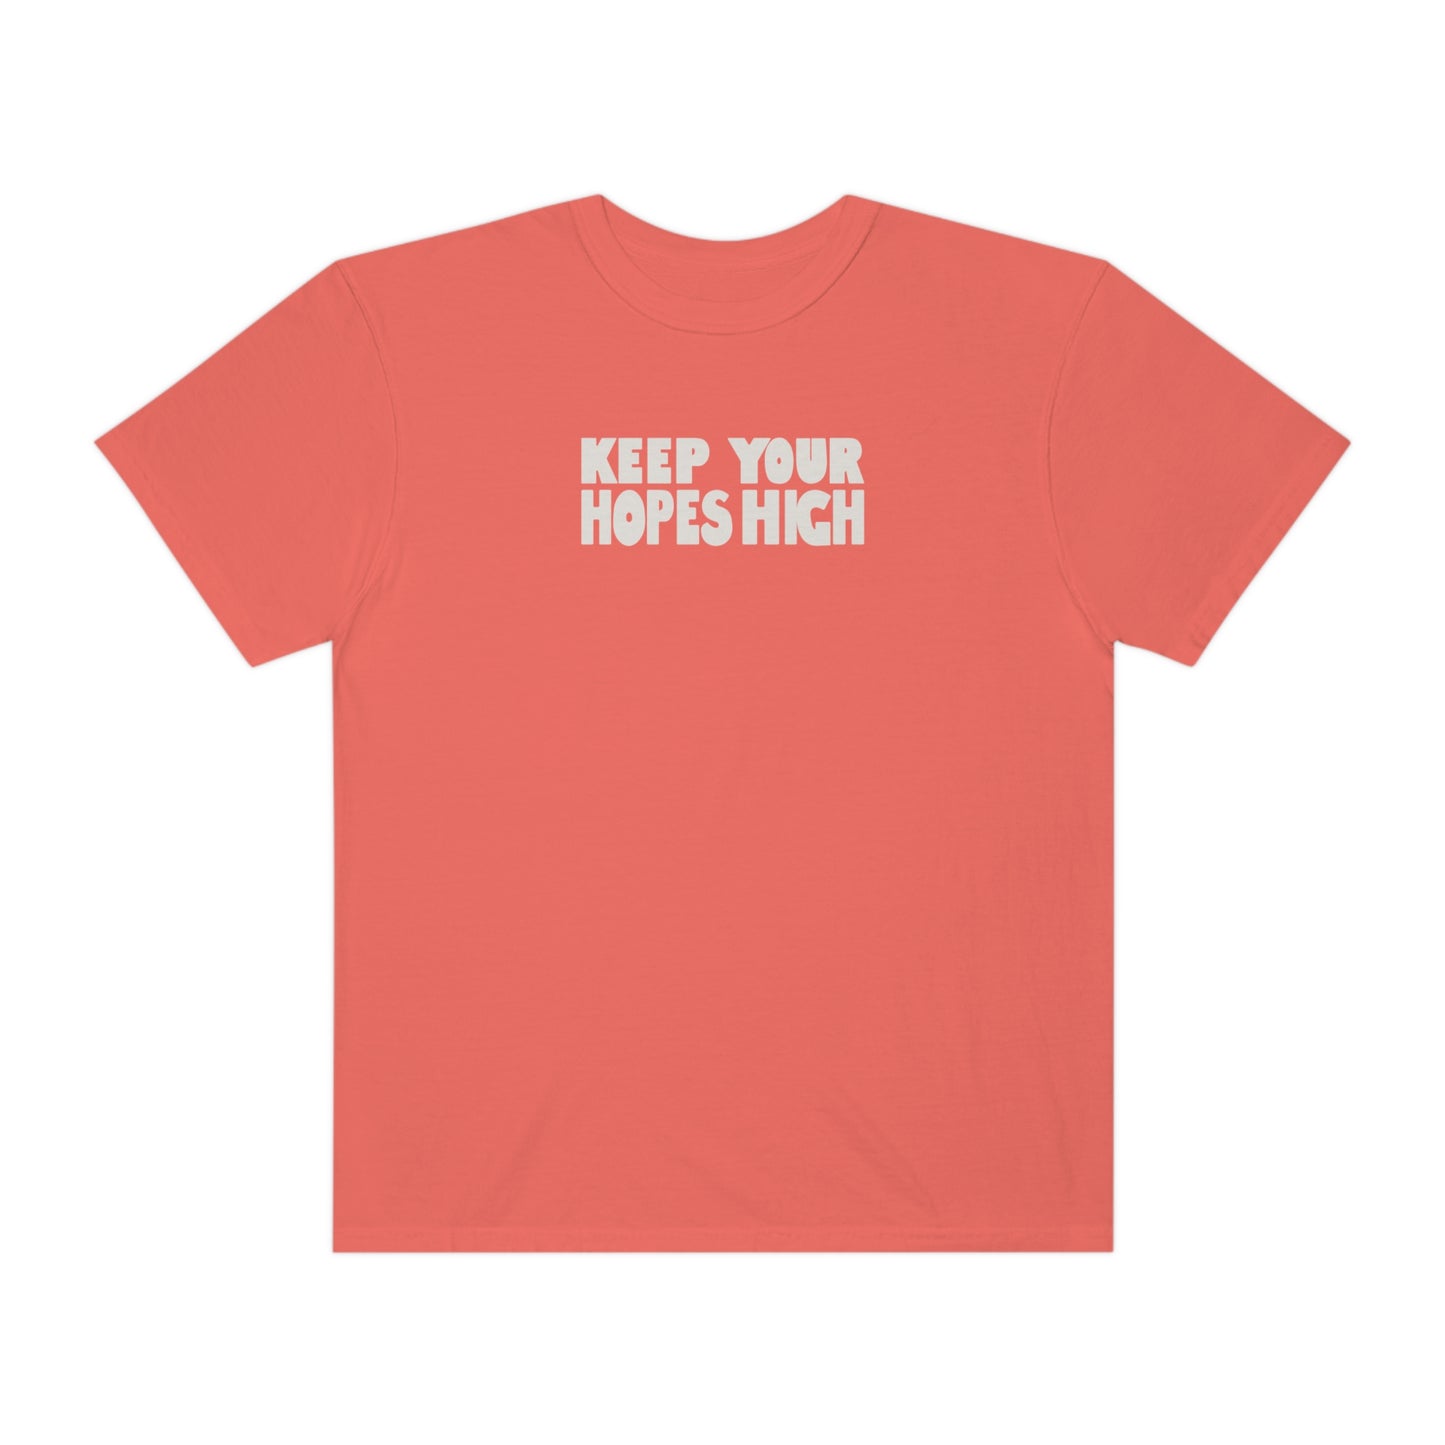 HIGH HOPES | Faith-Inspired Graphic T-Shirt | Original Design | High Quality